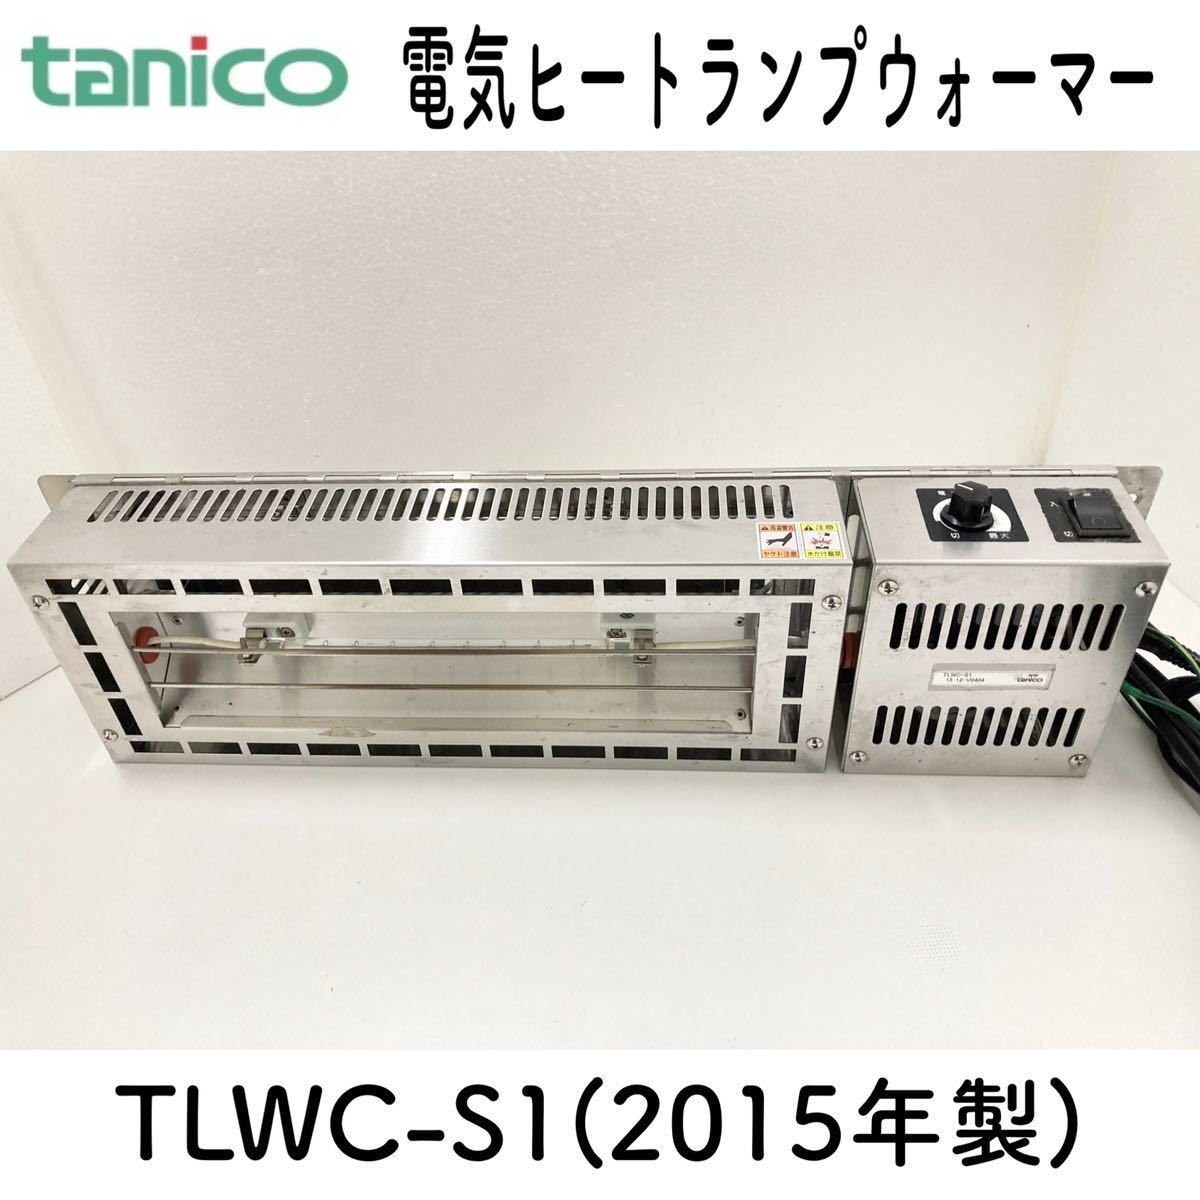 国内外の人気が集結 tanico 2015年製 TLWC-S1 電気ヒートランプウォーマー タニコー 堀③) 単相100V (H-1-3) 業務用 機器 厨房 電力調整機能付 棚下取付 その他